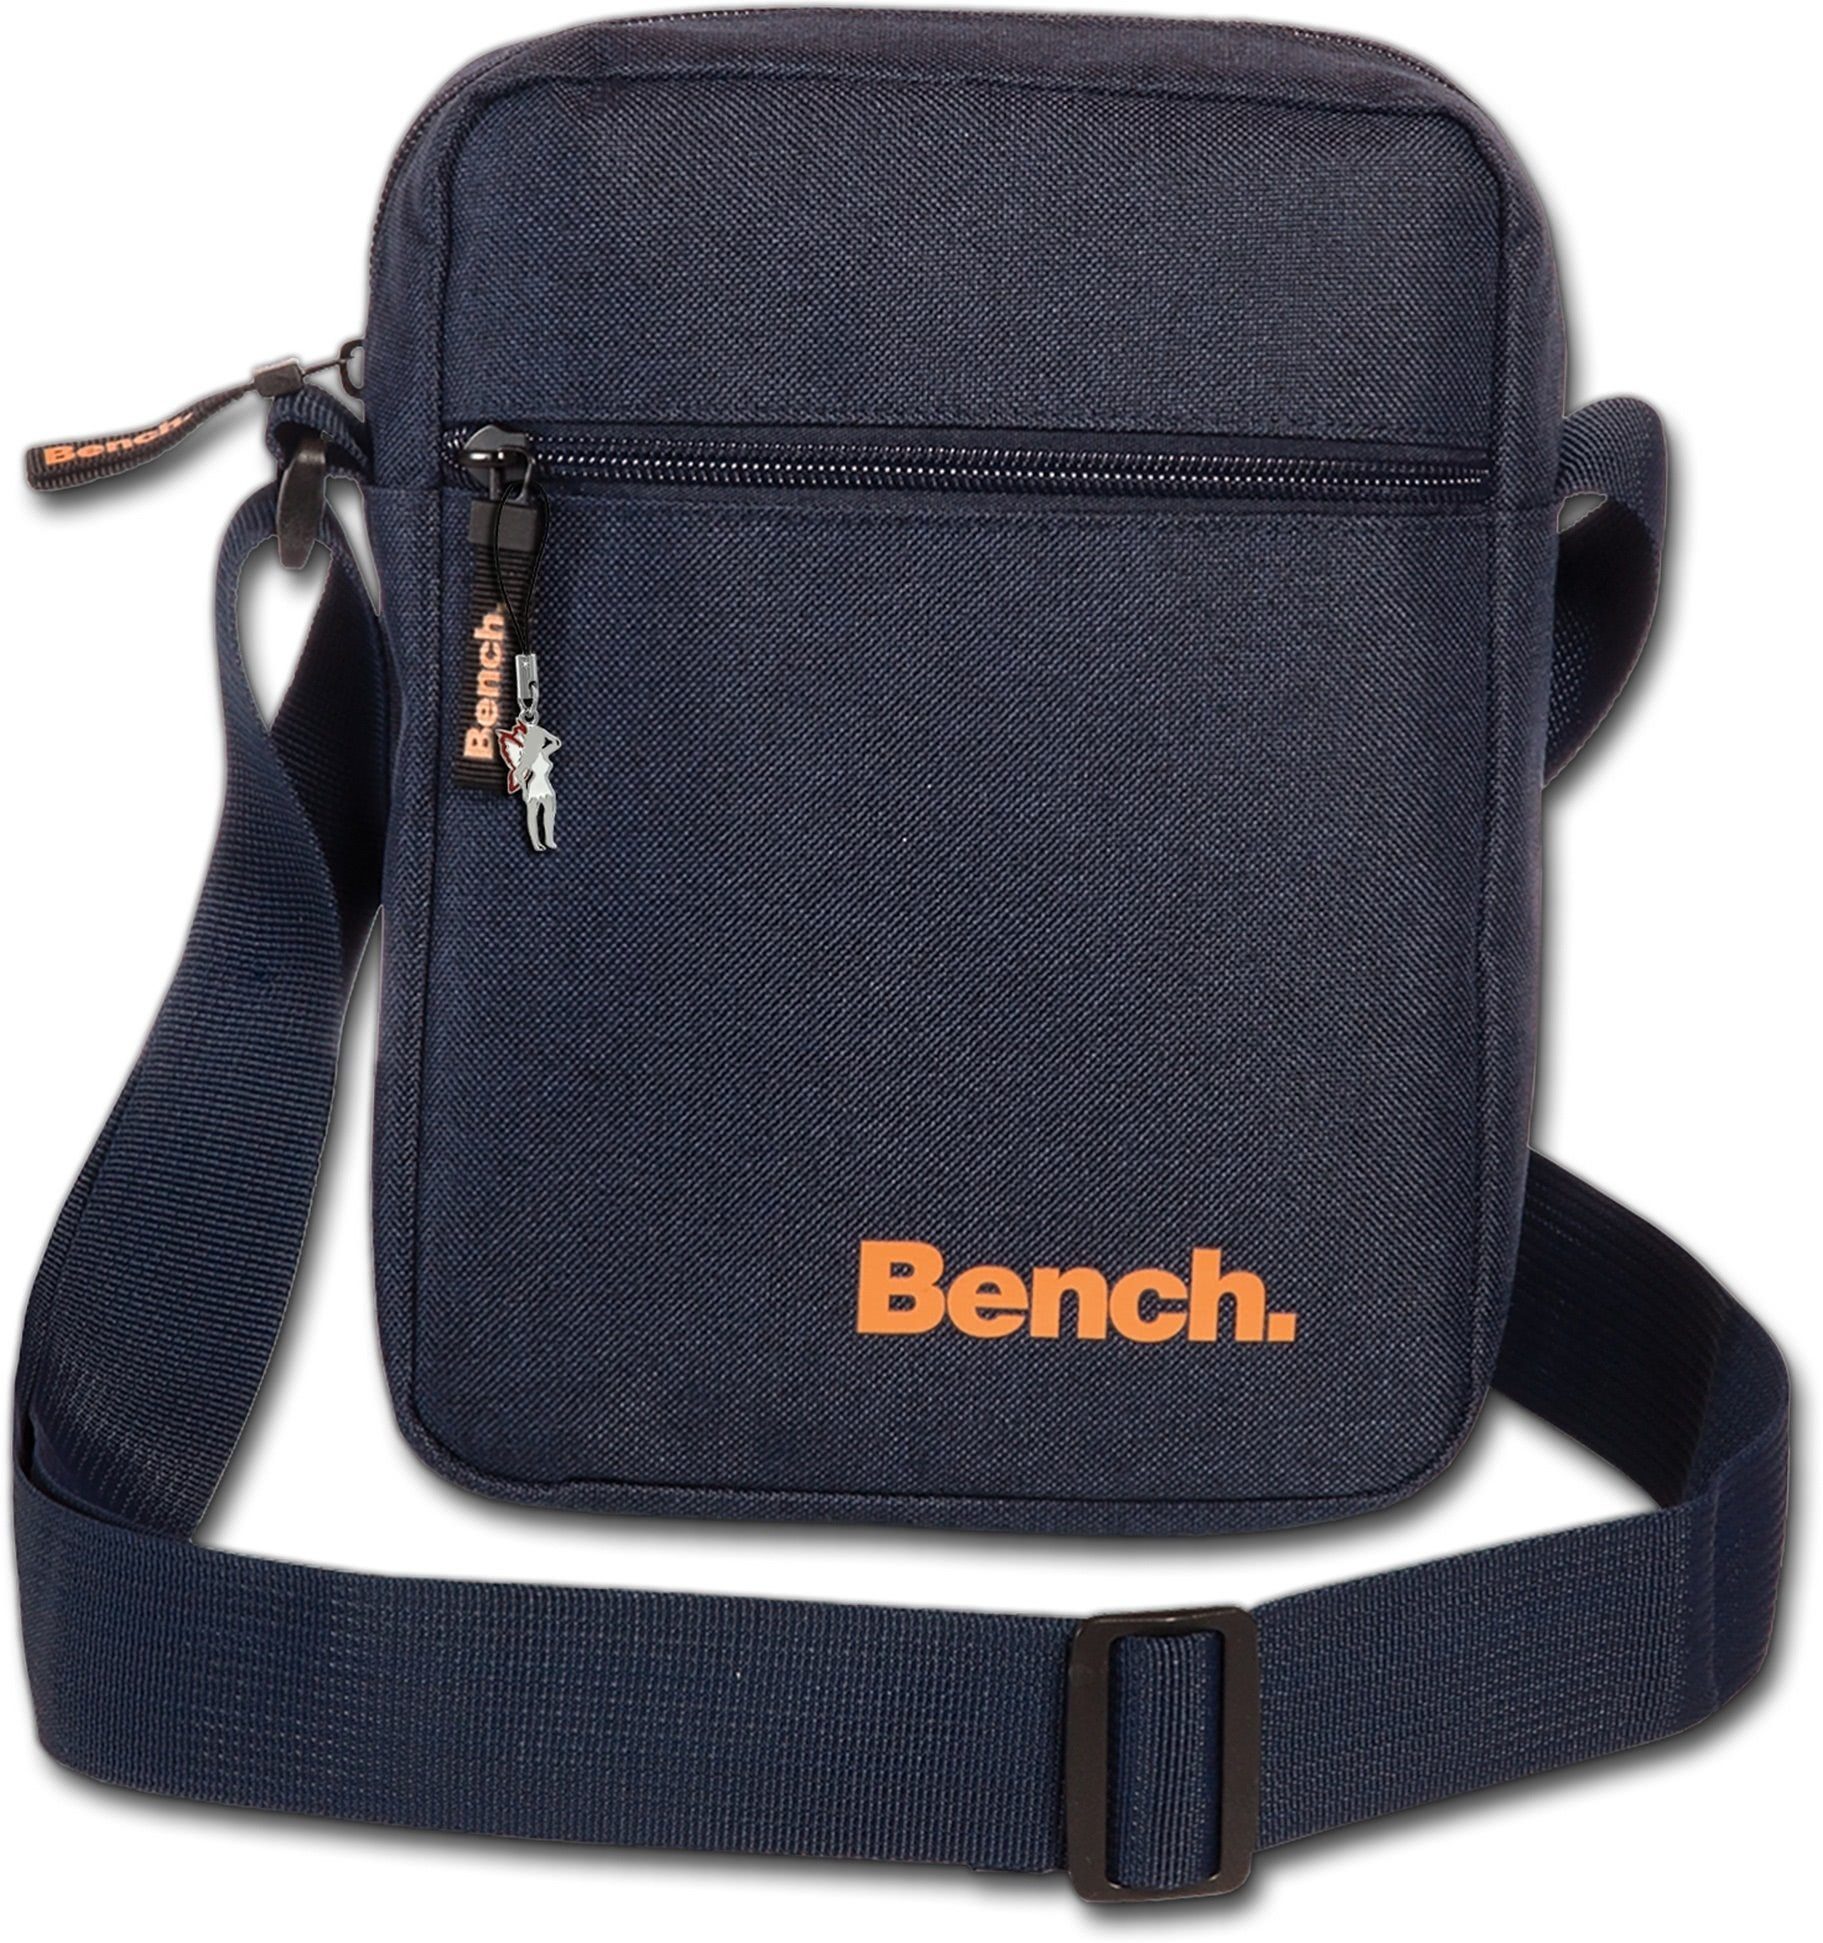 Bench. Umhängetasche »D2OTI301B Bench sportliche Umhängetasche blau« ( Umhängetasche), Damen, Herren, Jugend Tasche aus Polyester, Größe ca. 17cm  in blau online kaufen | OTTO